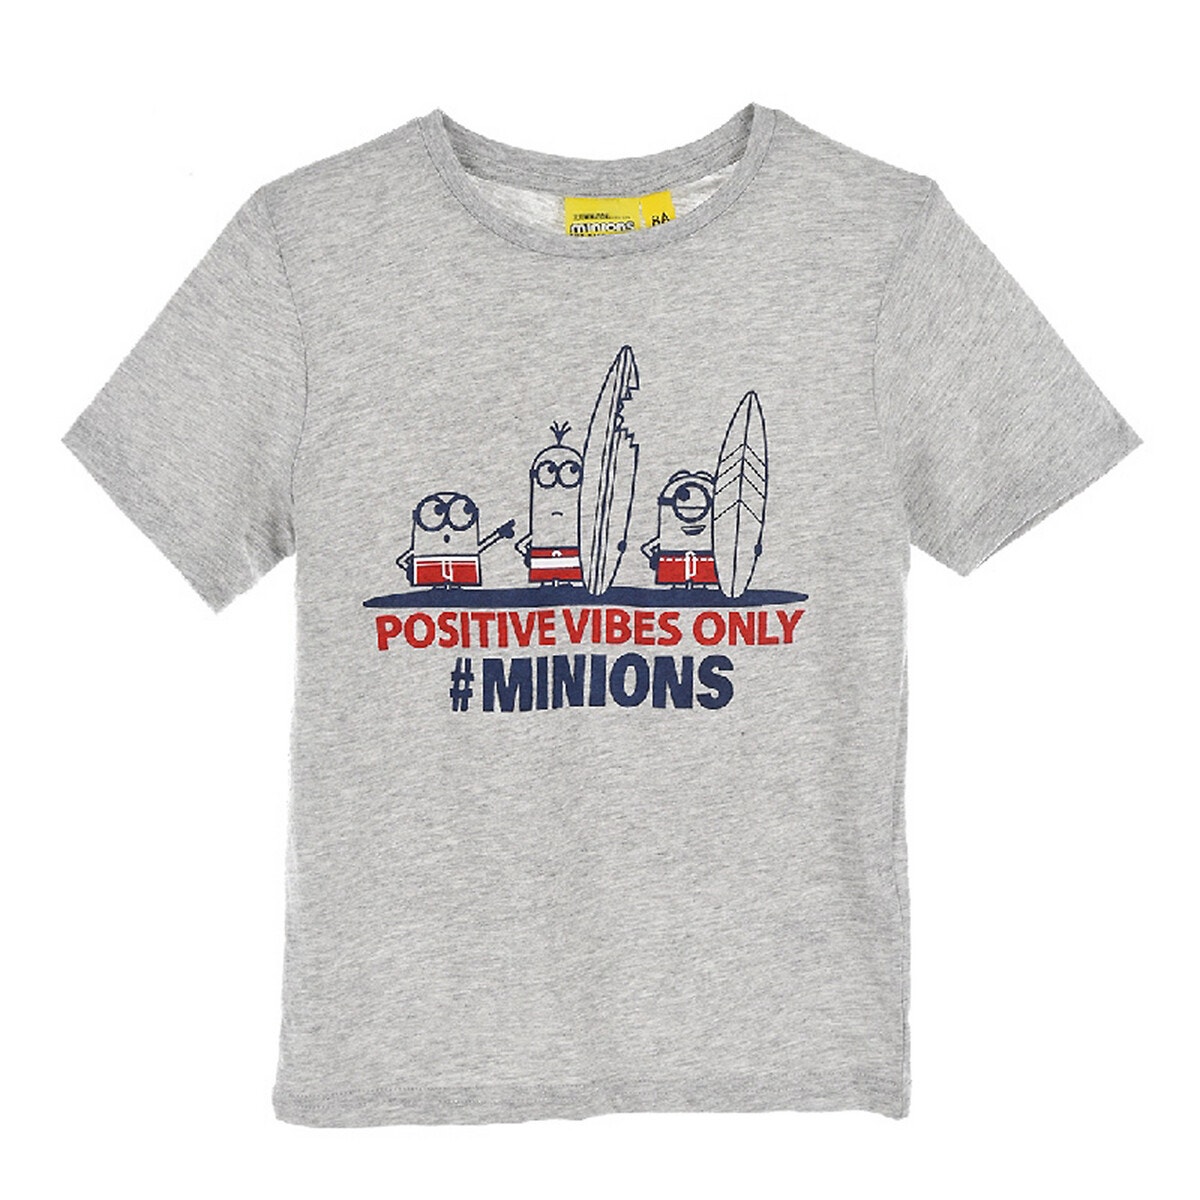 ΠΑΙΔΙ | Μπλούζες & Πουκάμισα | T-shirts Κοντομάνικο T-shirt, 3-8 ετών